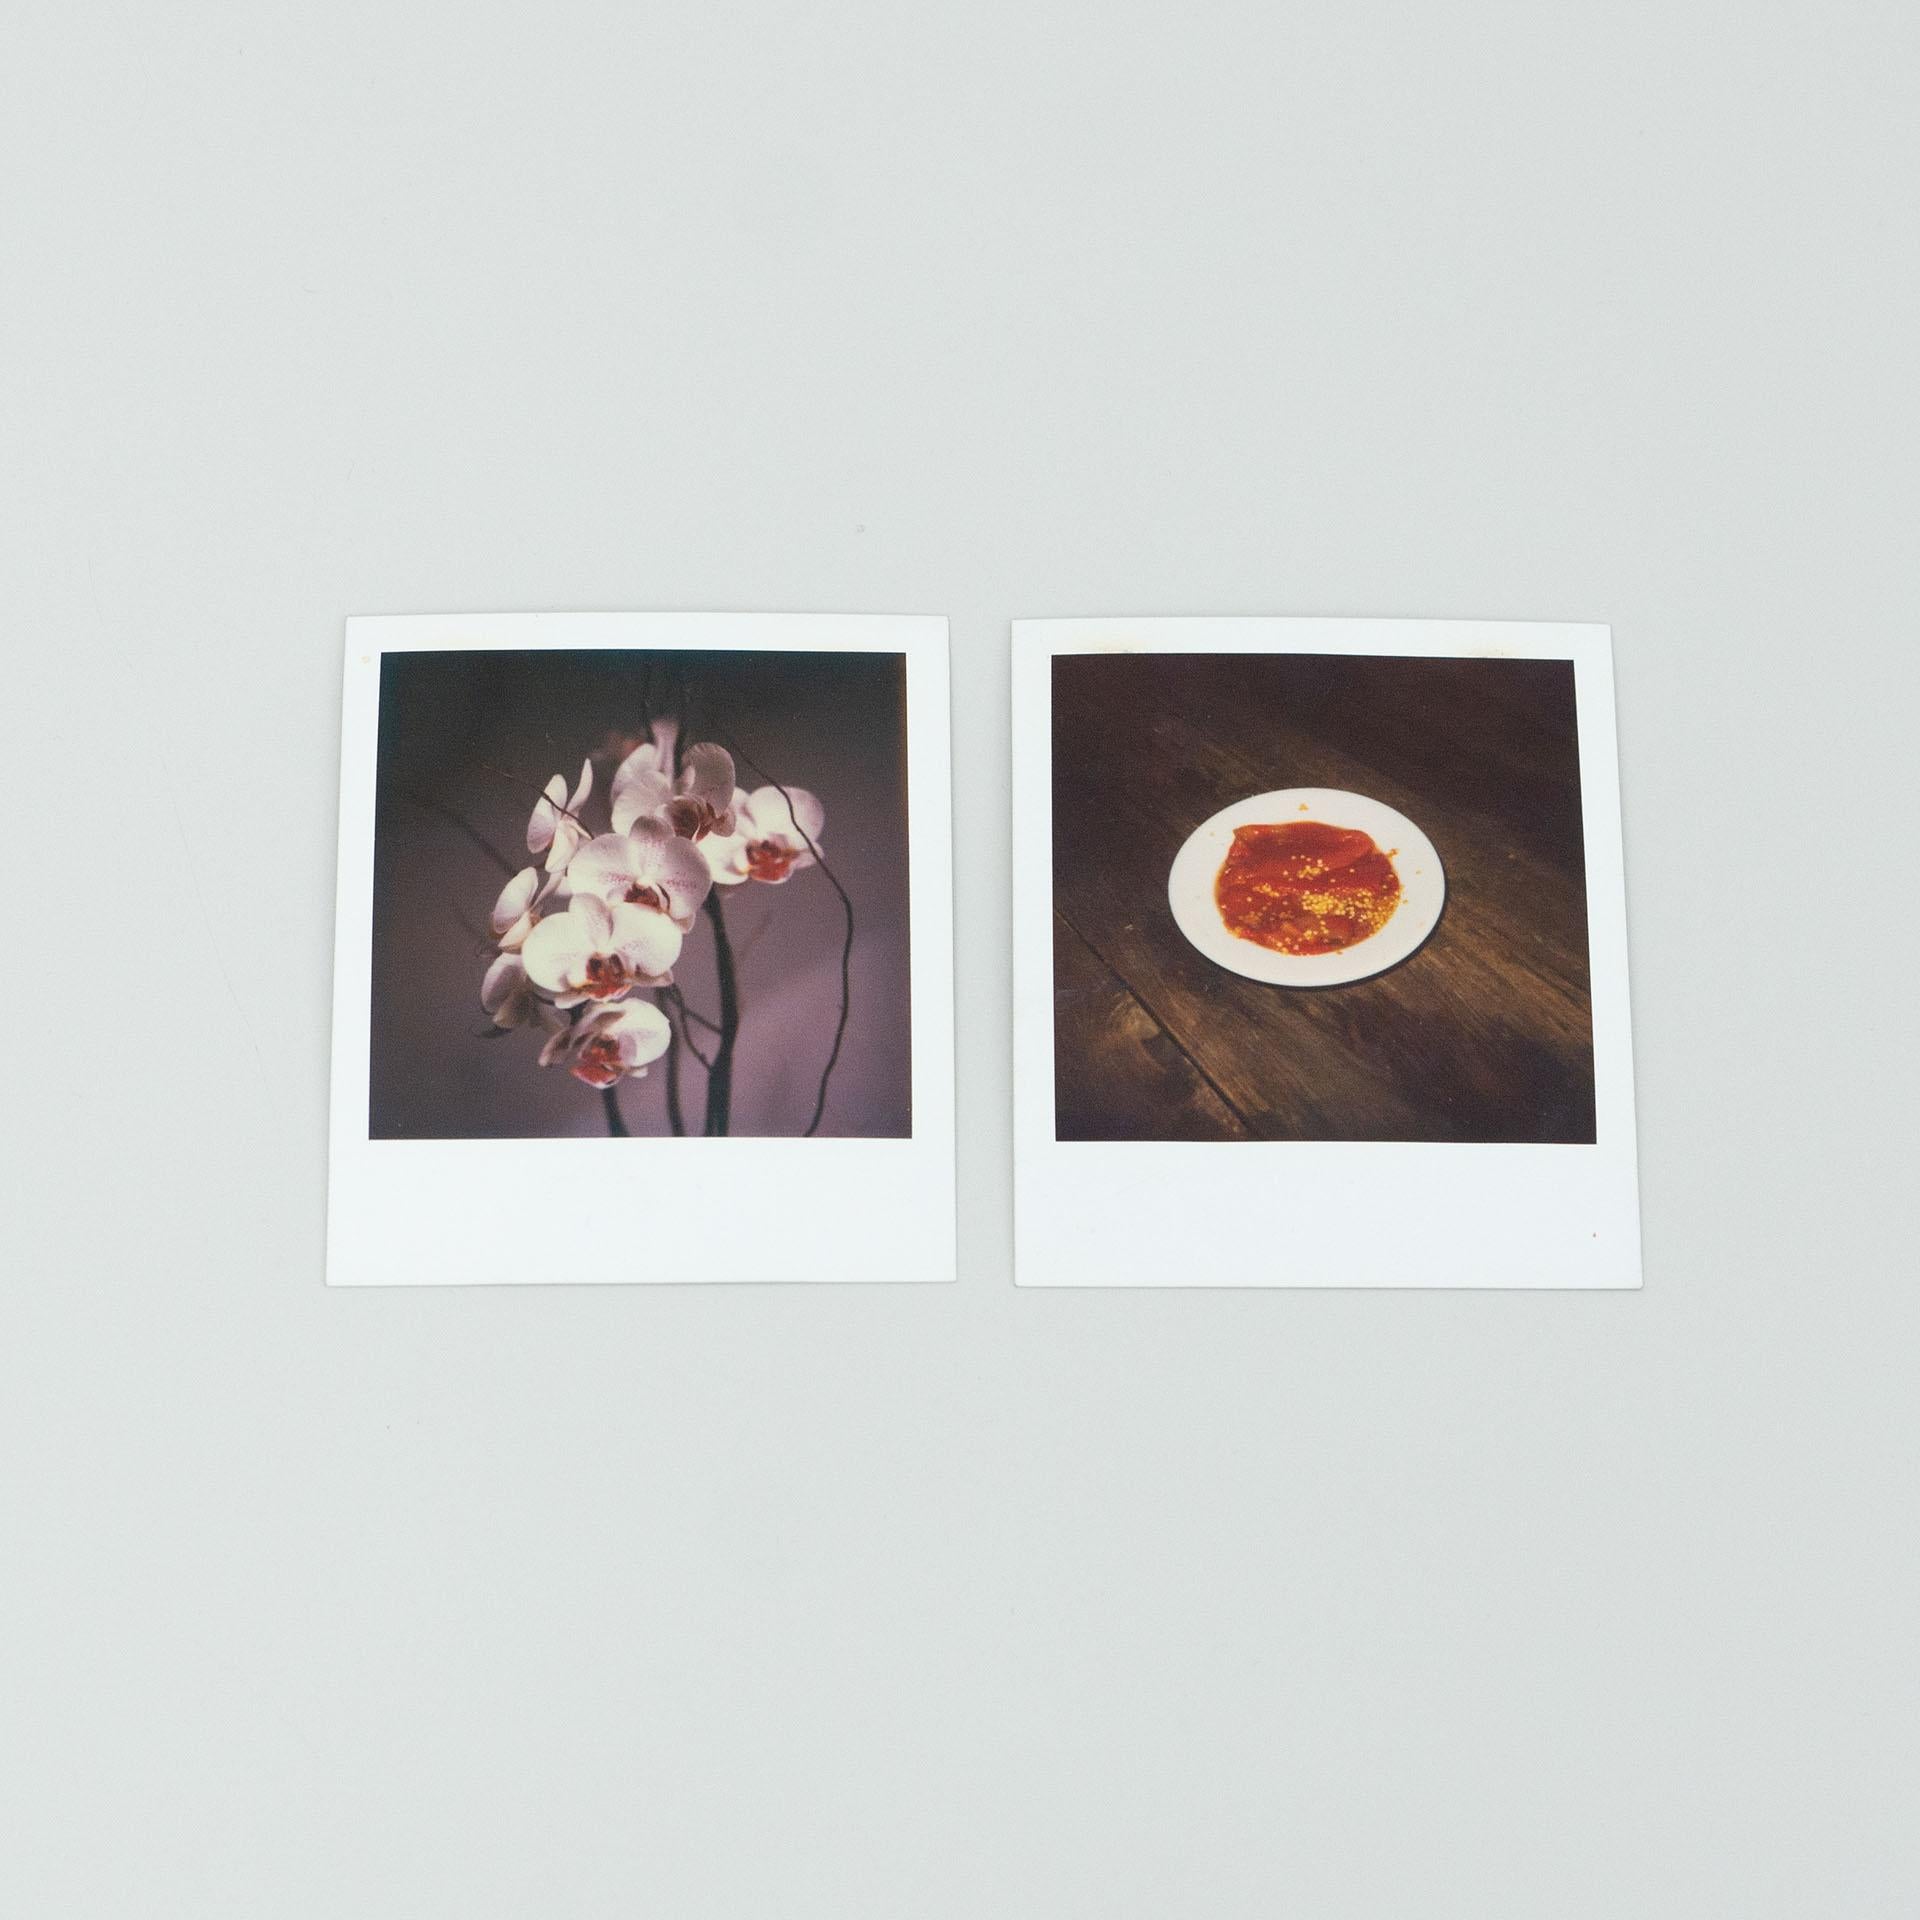 Reihe von Polaroid-Fotografien von Miquel Arnal.

Originaler Zustand mit geringen alters- und gebrauchsbedingten Abnutzungserscheinungen, der eine schöne Patina aufweist.

Material:
Photographisches Papier

Abmessungen (jedes Stück):
T 0,1